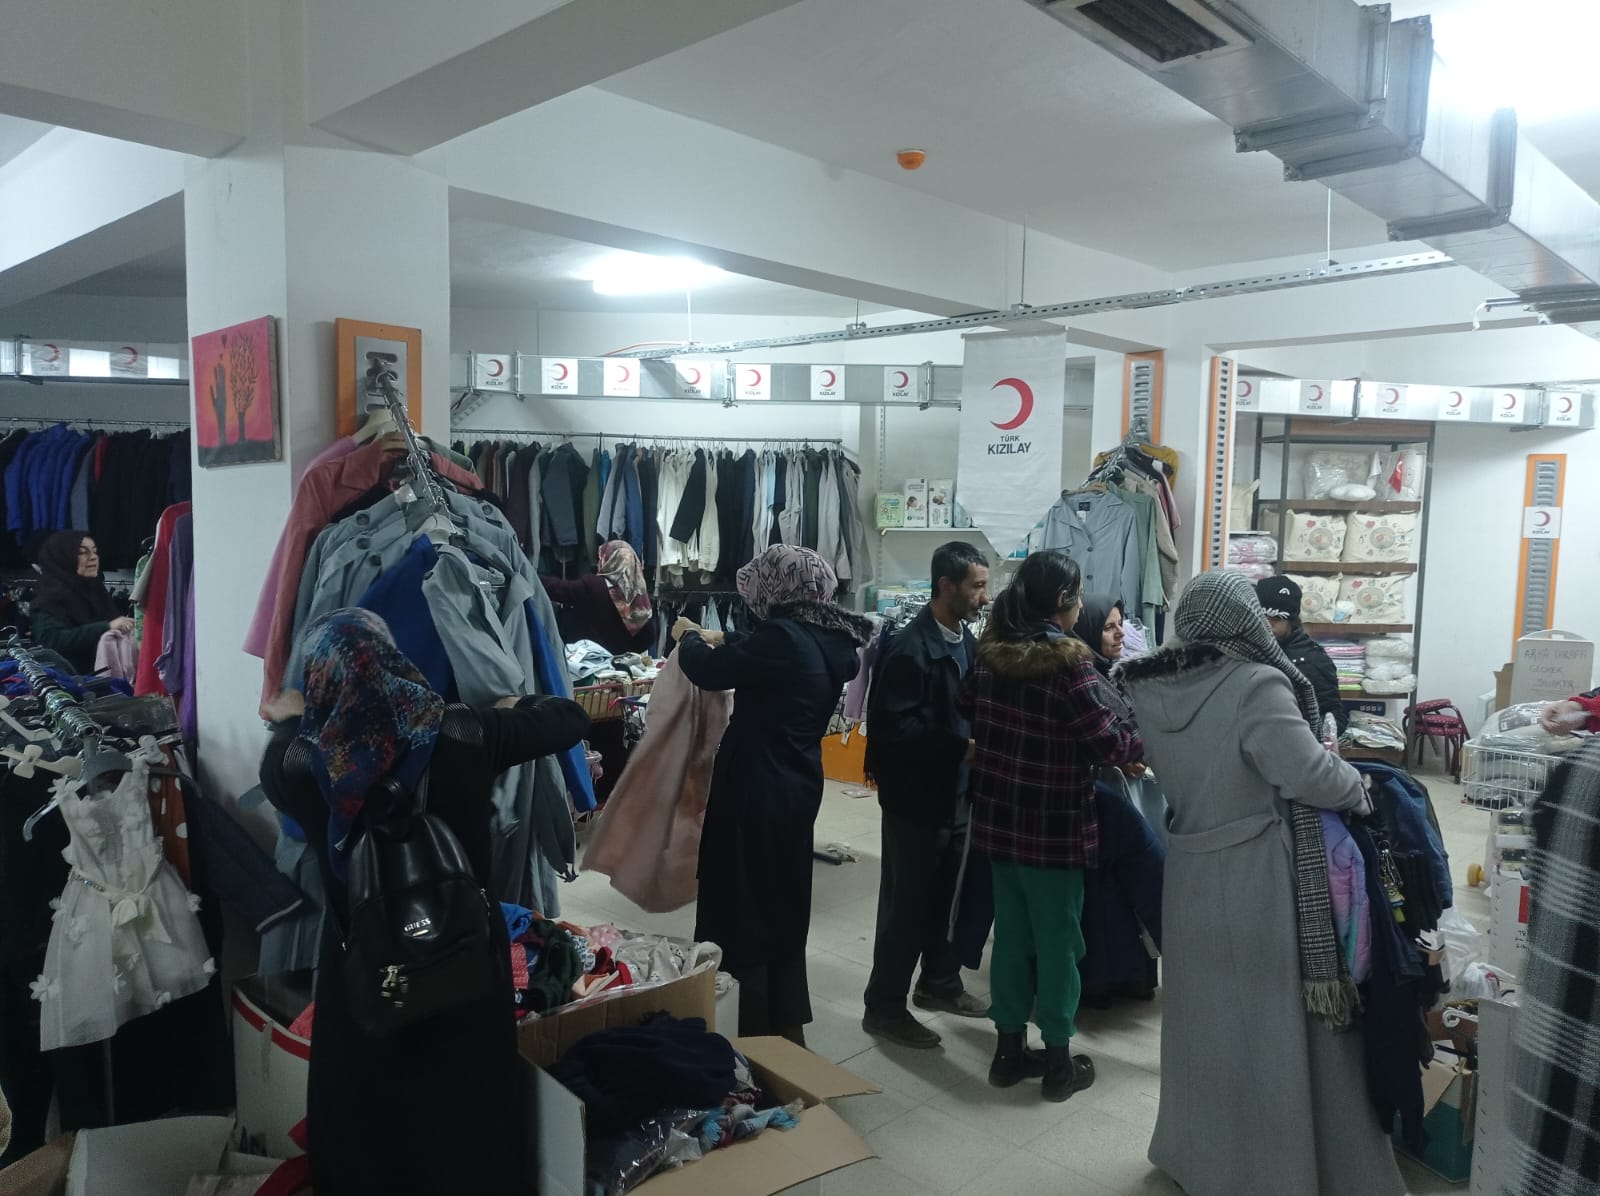 Türk Kızılay Elazığ şubesi olarak ihtiyaç sahiplerimiz için butik mağazamızda kıyafet dağıtımlarımıza devam ediyoruz🌙 (1)